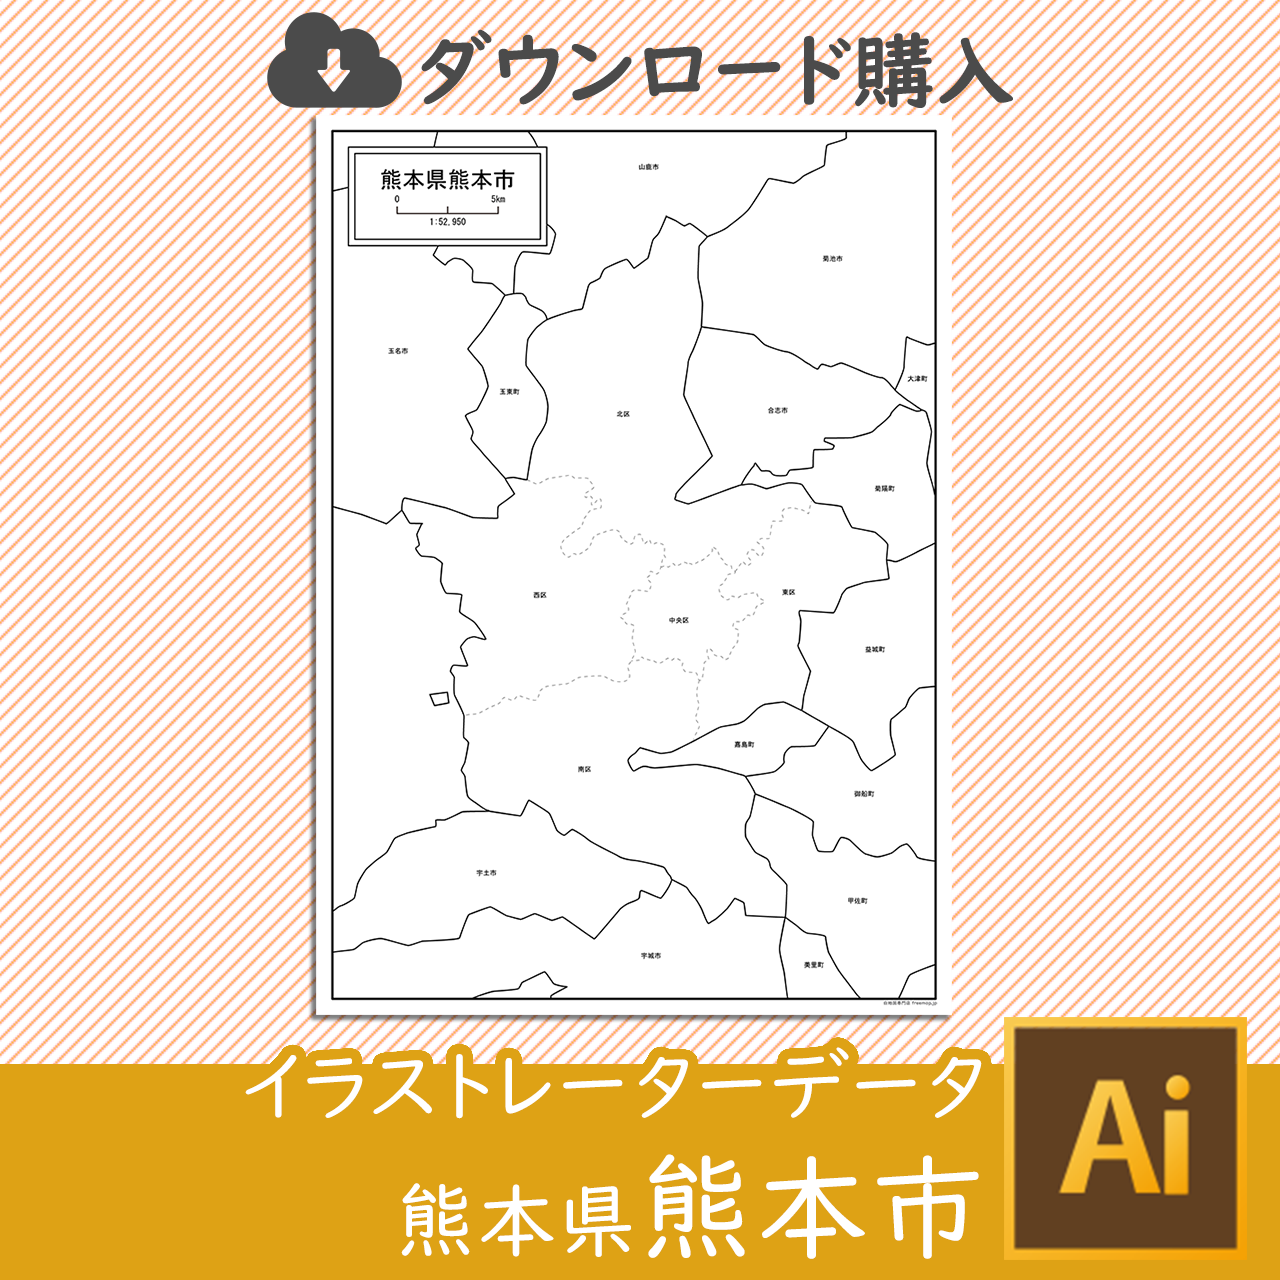 熊本市のaiデータのサムネイル画像